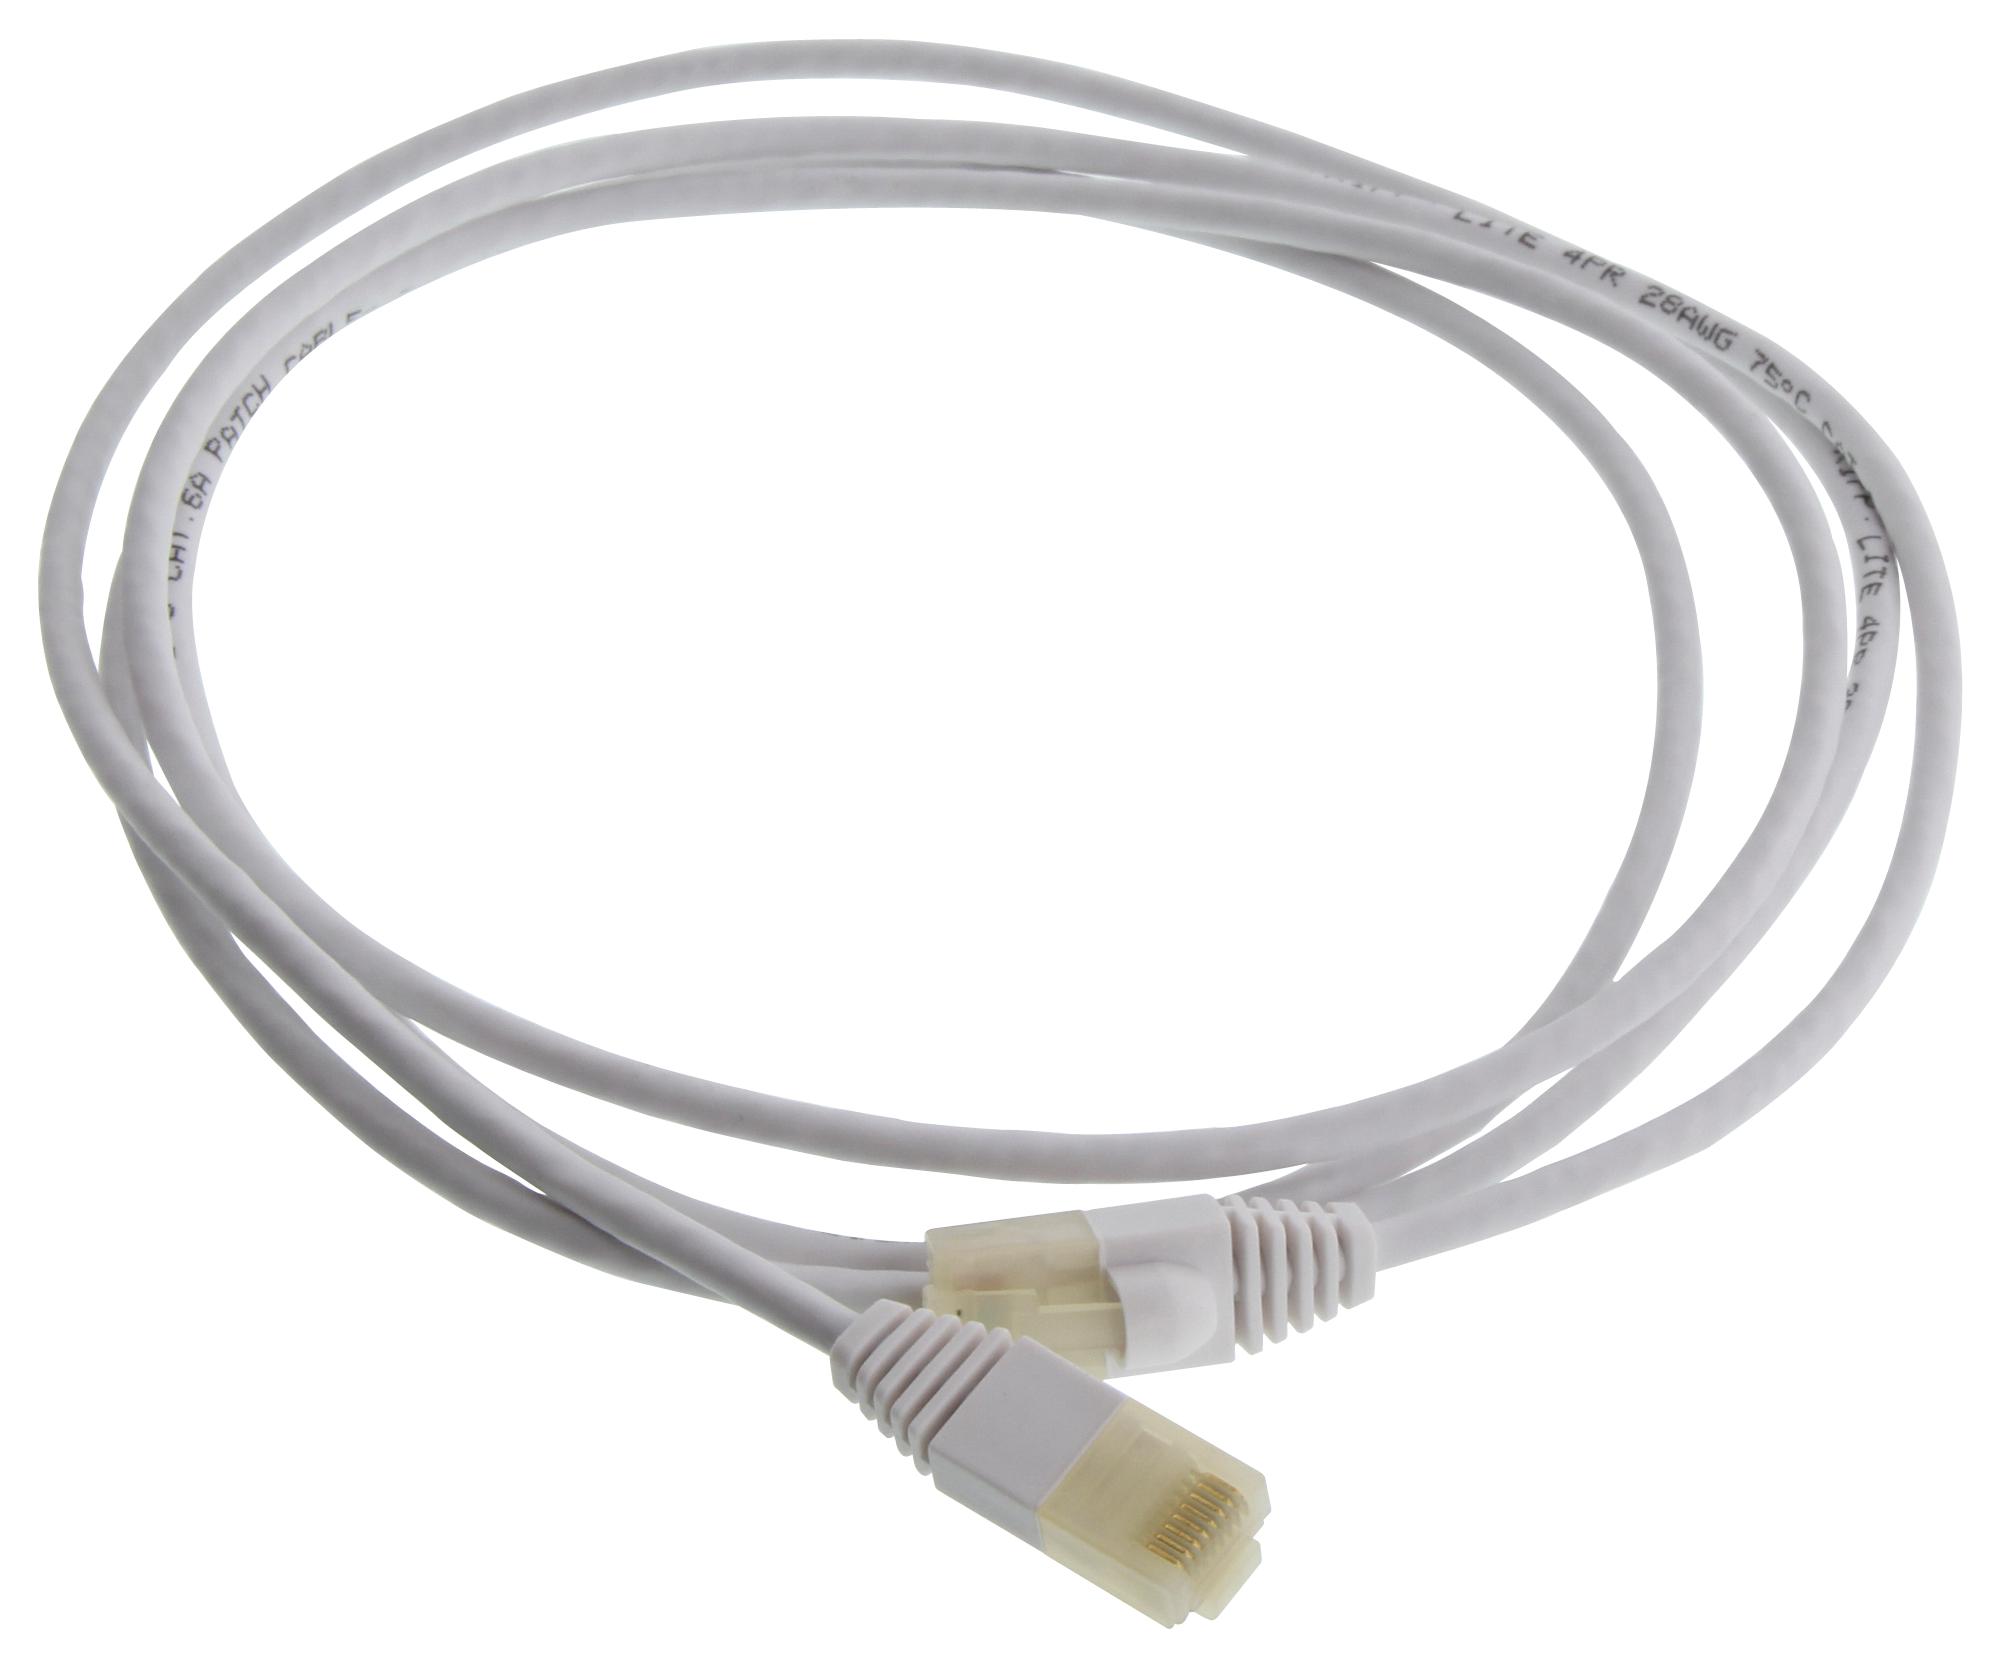 Eaton Tripp Lite N261Ab-S06-Wh Enet Cable, Rj45 Plug-Plug, 6Ft, White